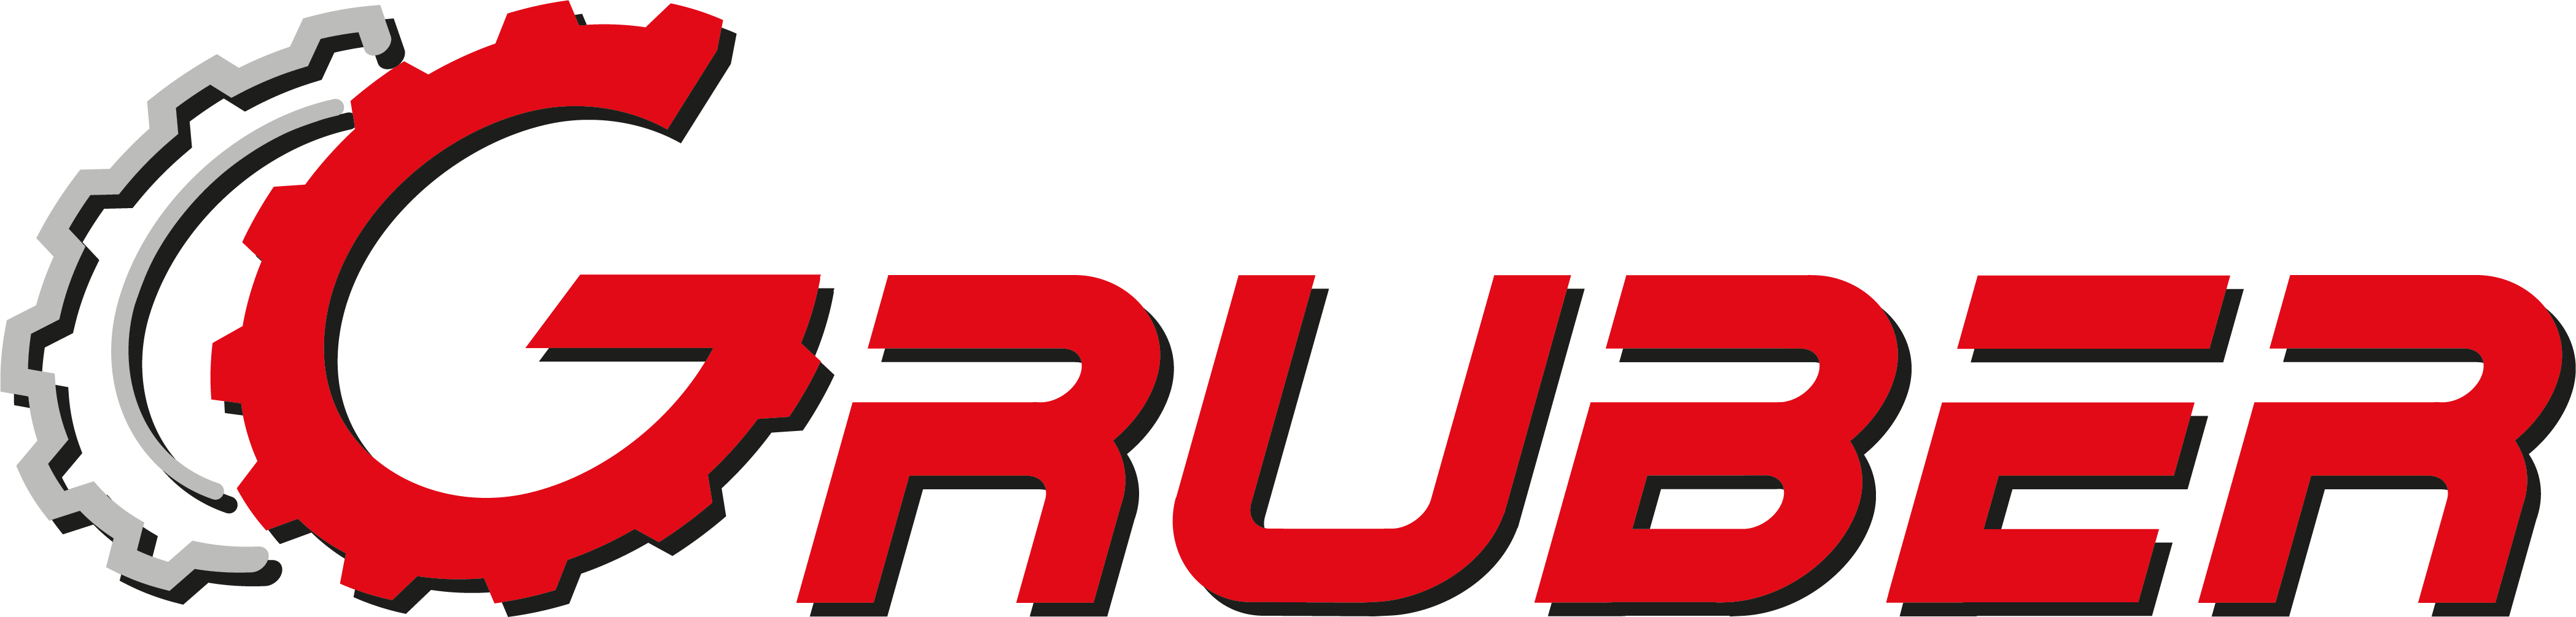 Logo Gruber